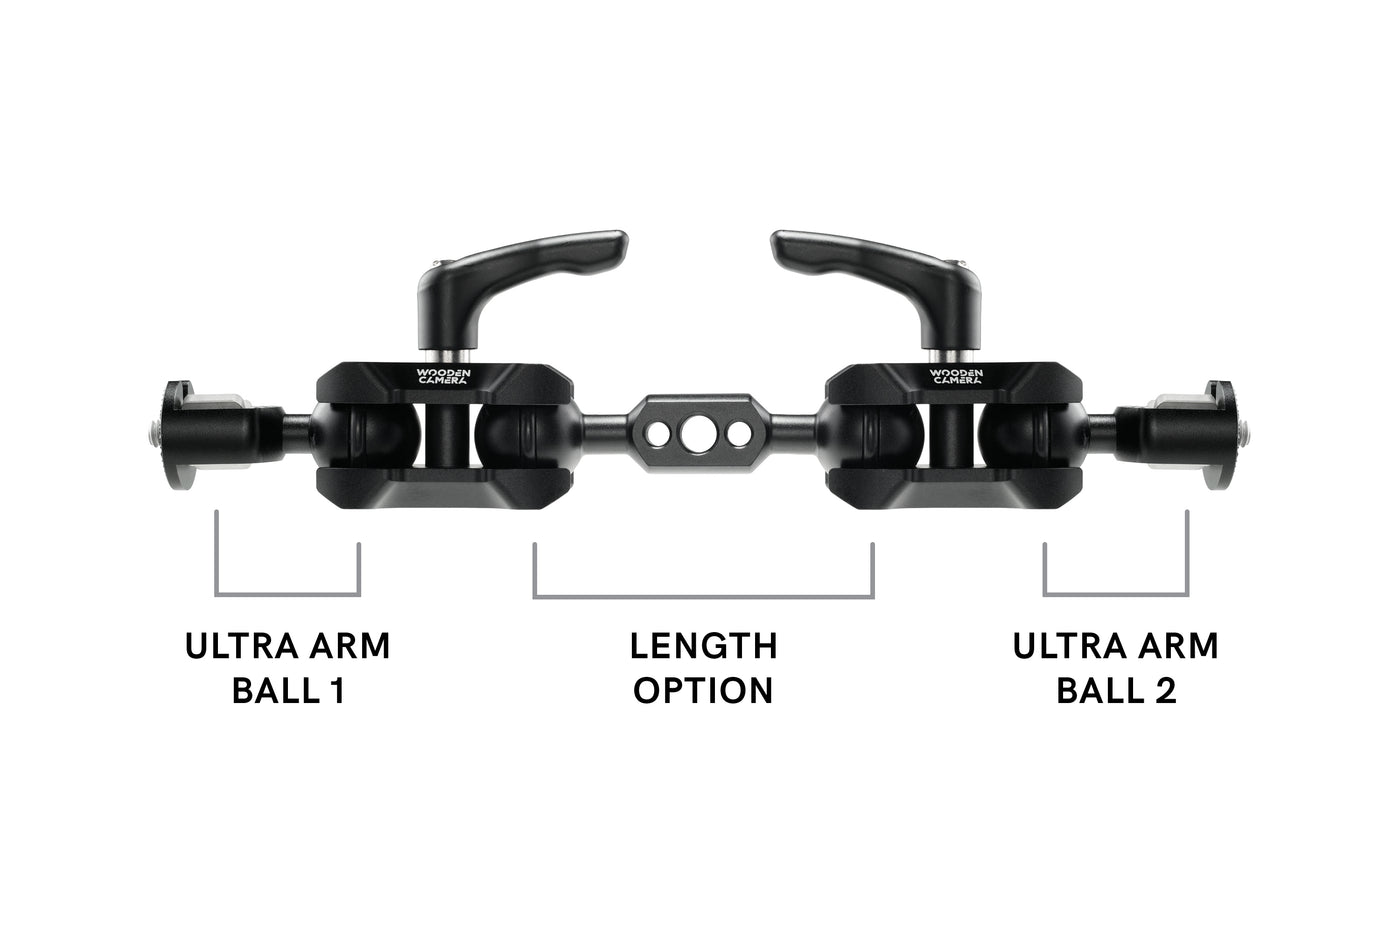 UVF & Ultra Arm